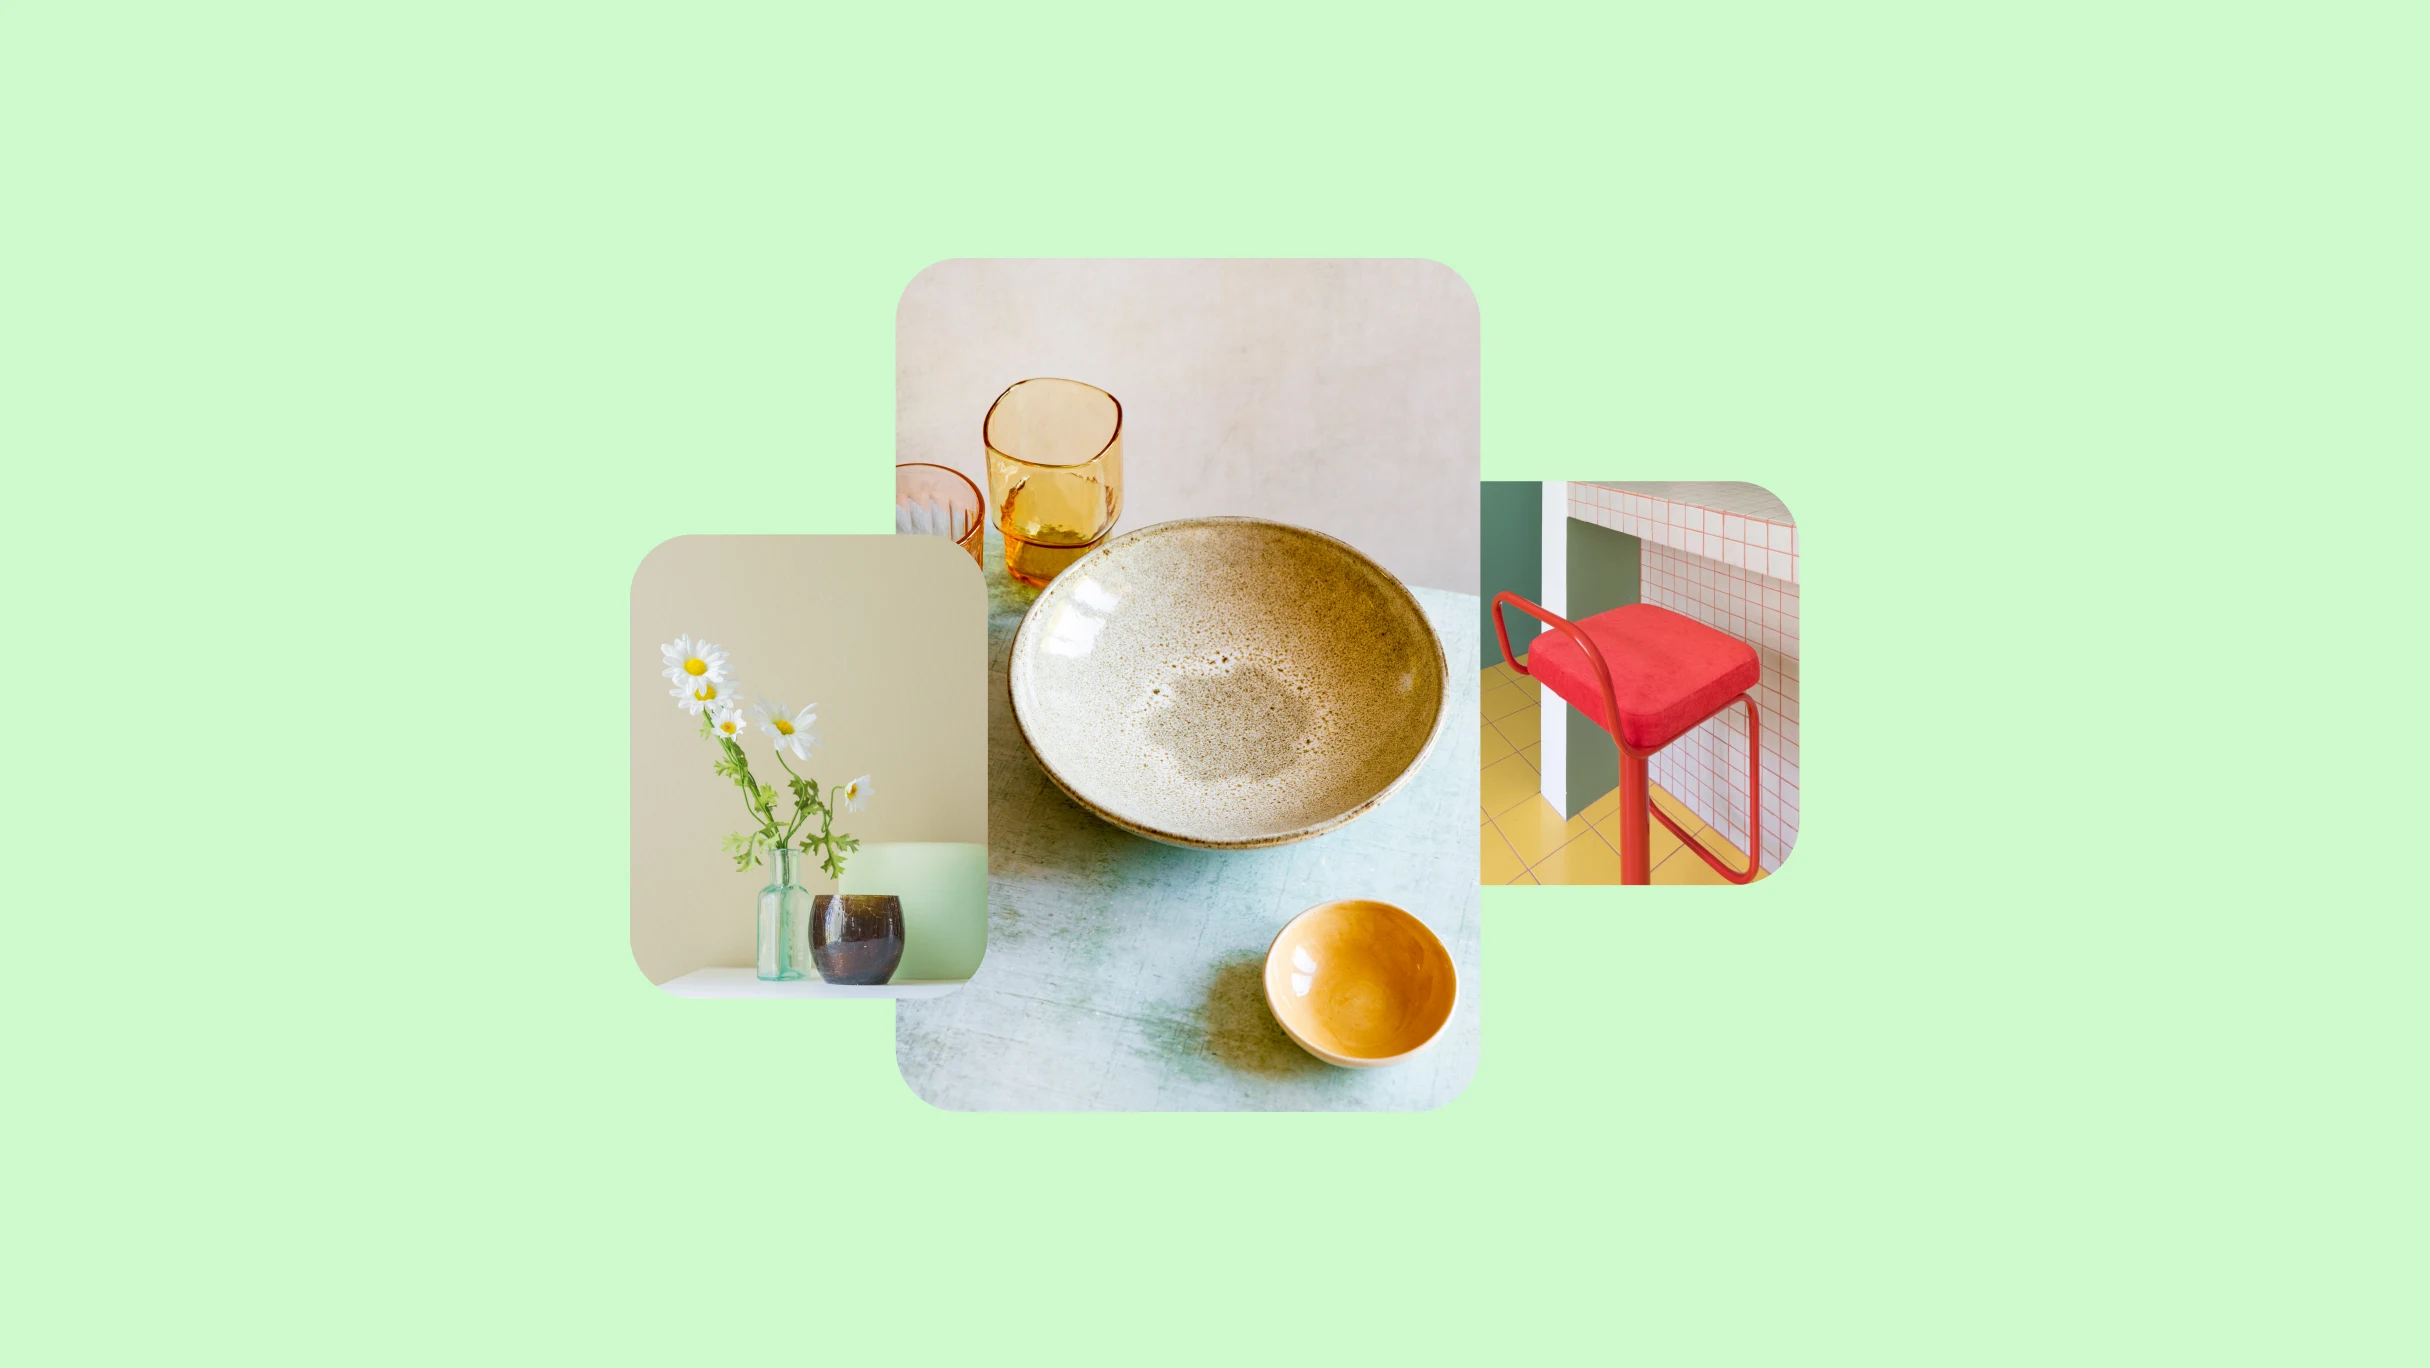 Trois images sur un fond vert citron. À gauche, des marguerites dans un vase transparent. Au milieu, un bol en céramique et des verres. À droite, une chaise rouge sur un comptoir.